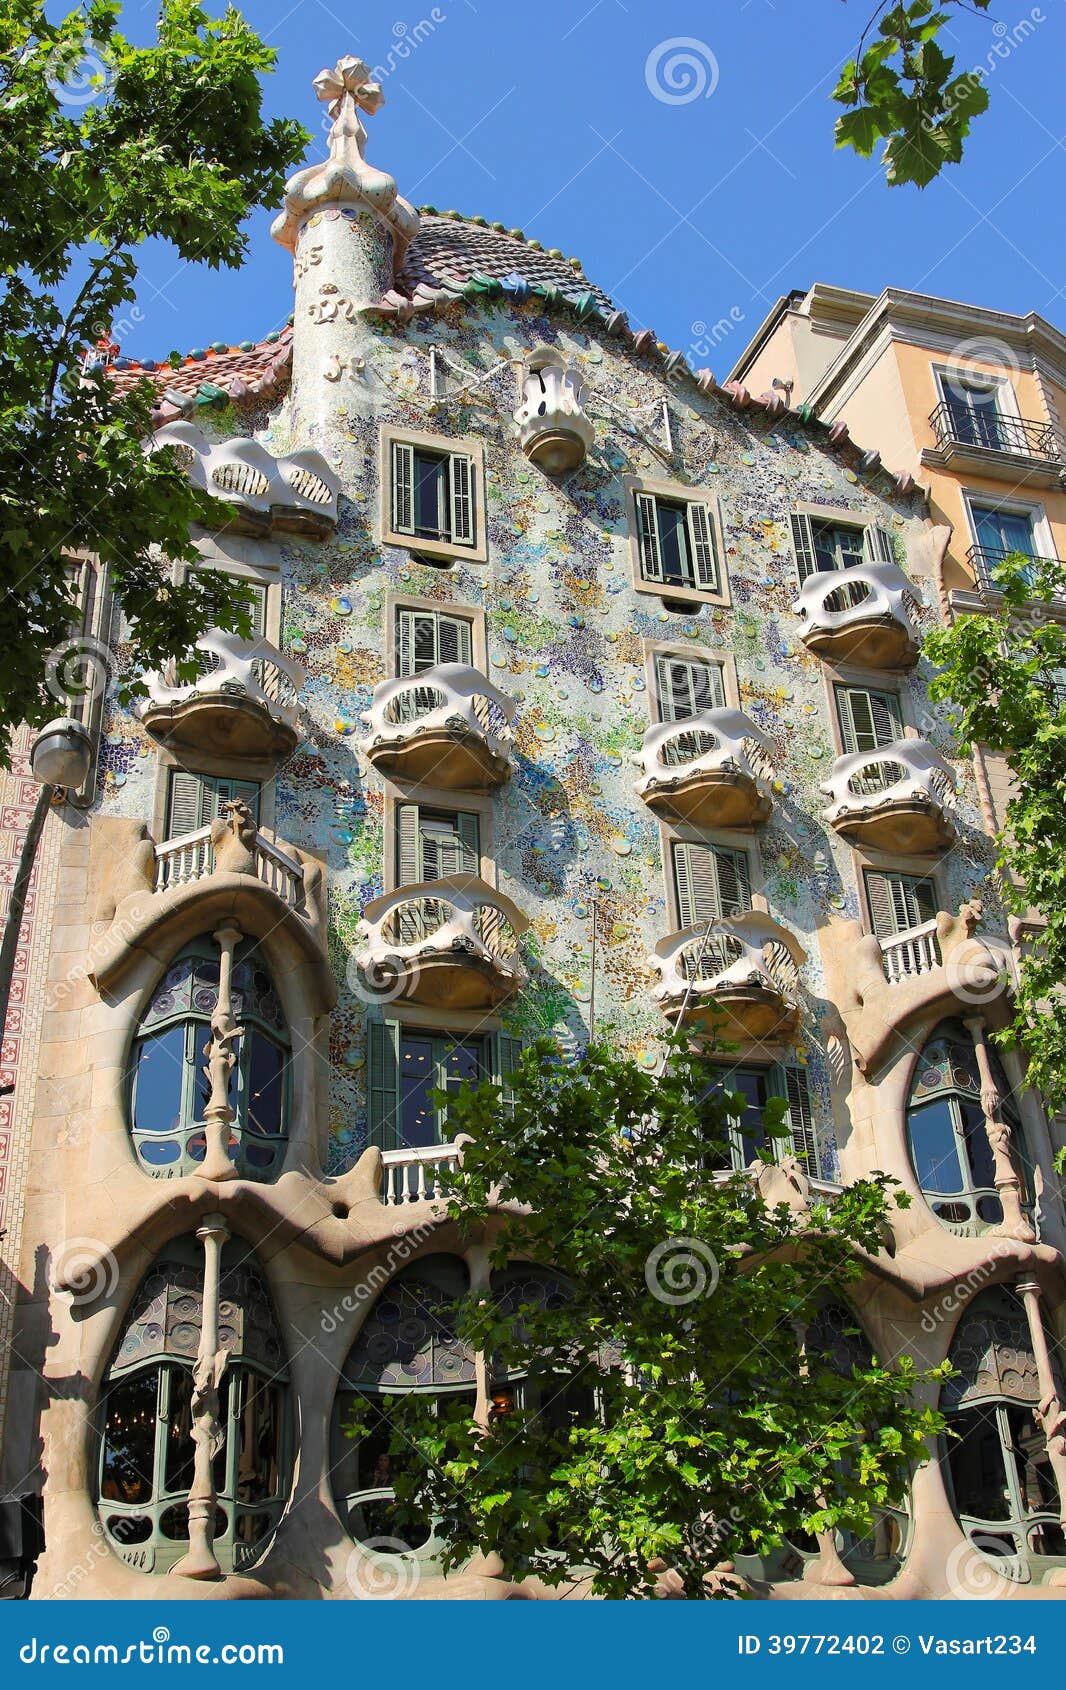 Fachada de la casa Batllo. La vista exterior de la casa Batllo en Barcelona, construyendo fue hecha por gran Antoni Gaudi.